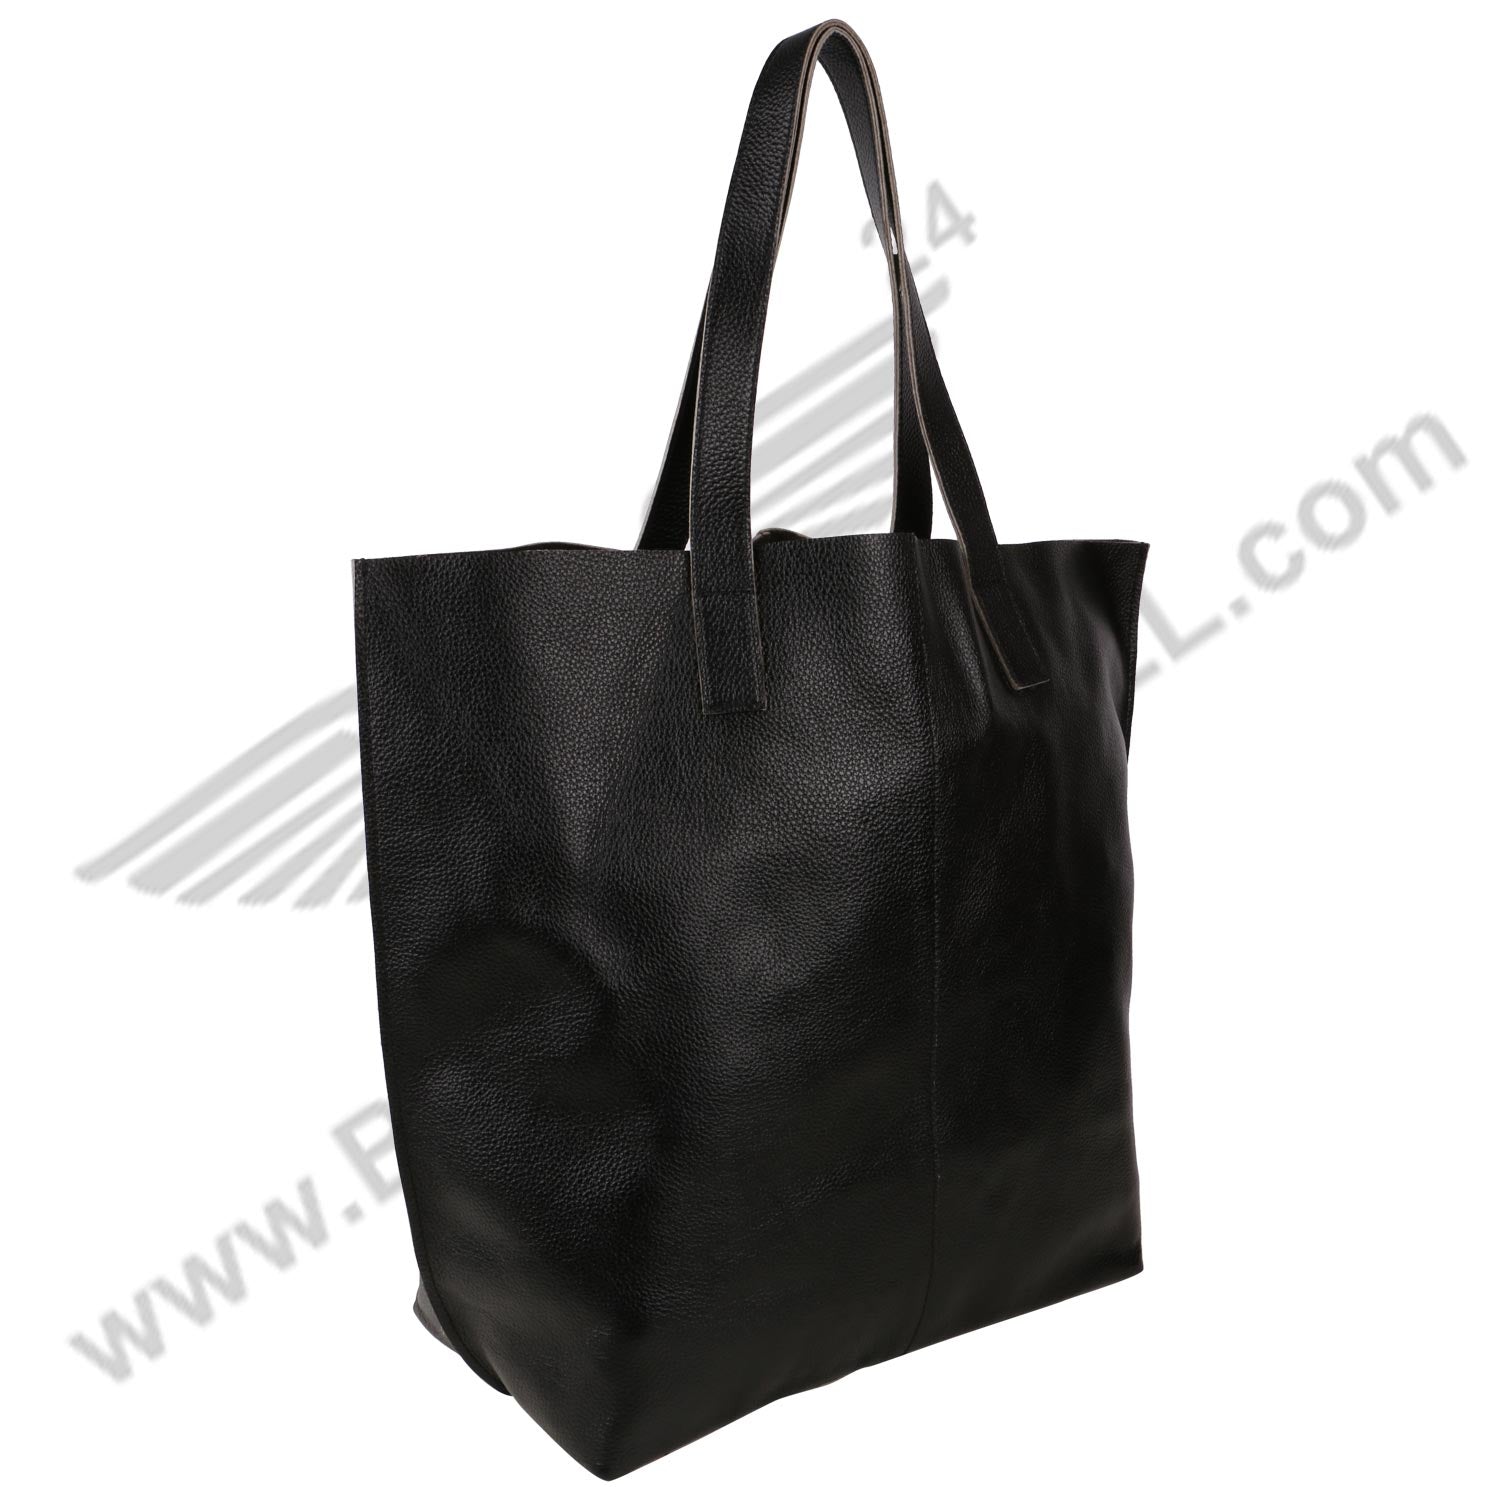 Side image of black LUFT SHOPPING BAG 